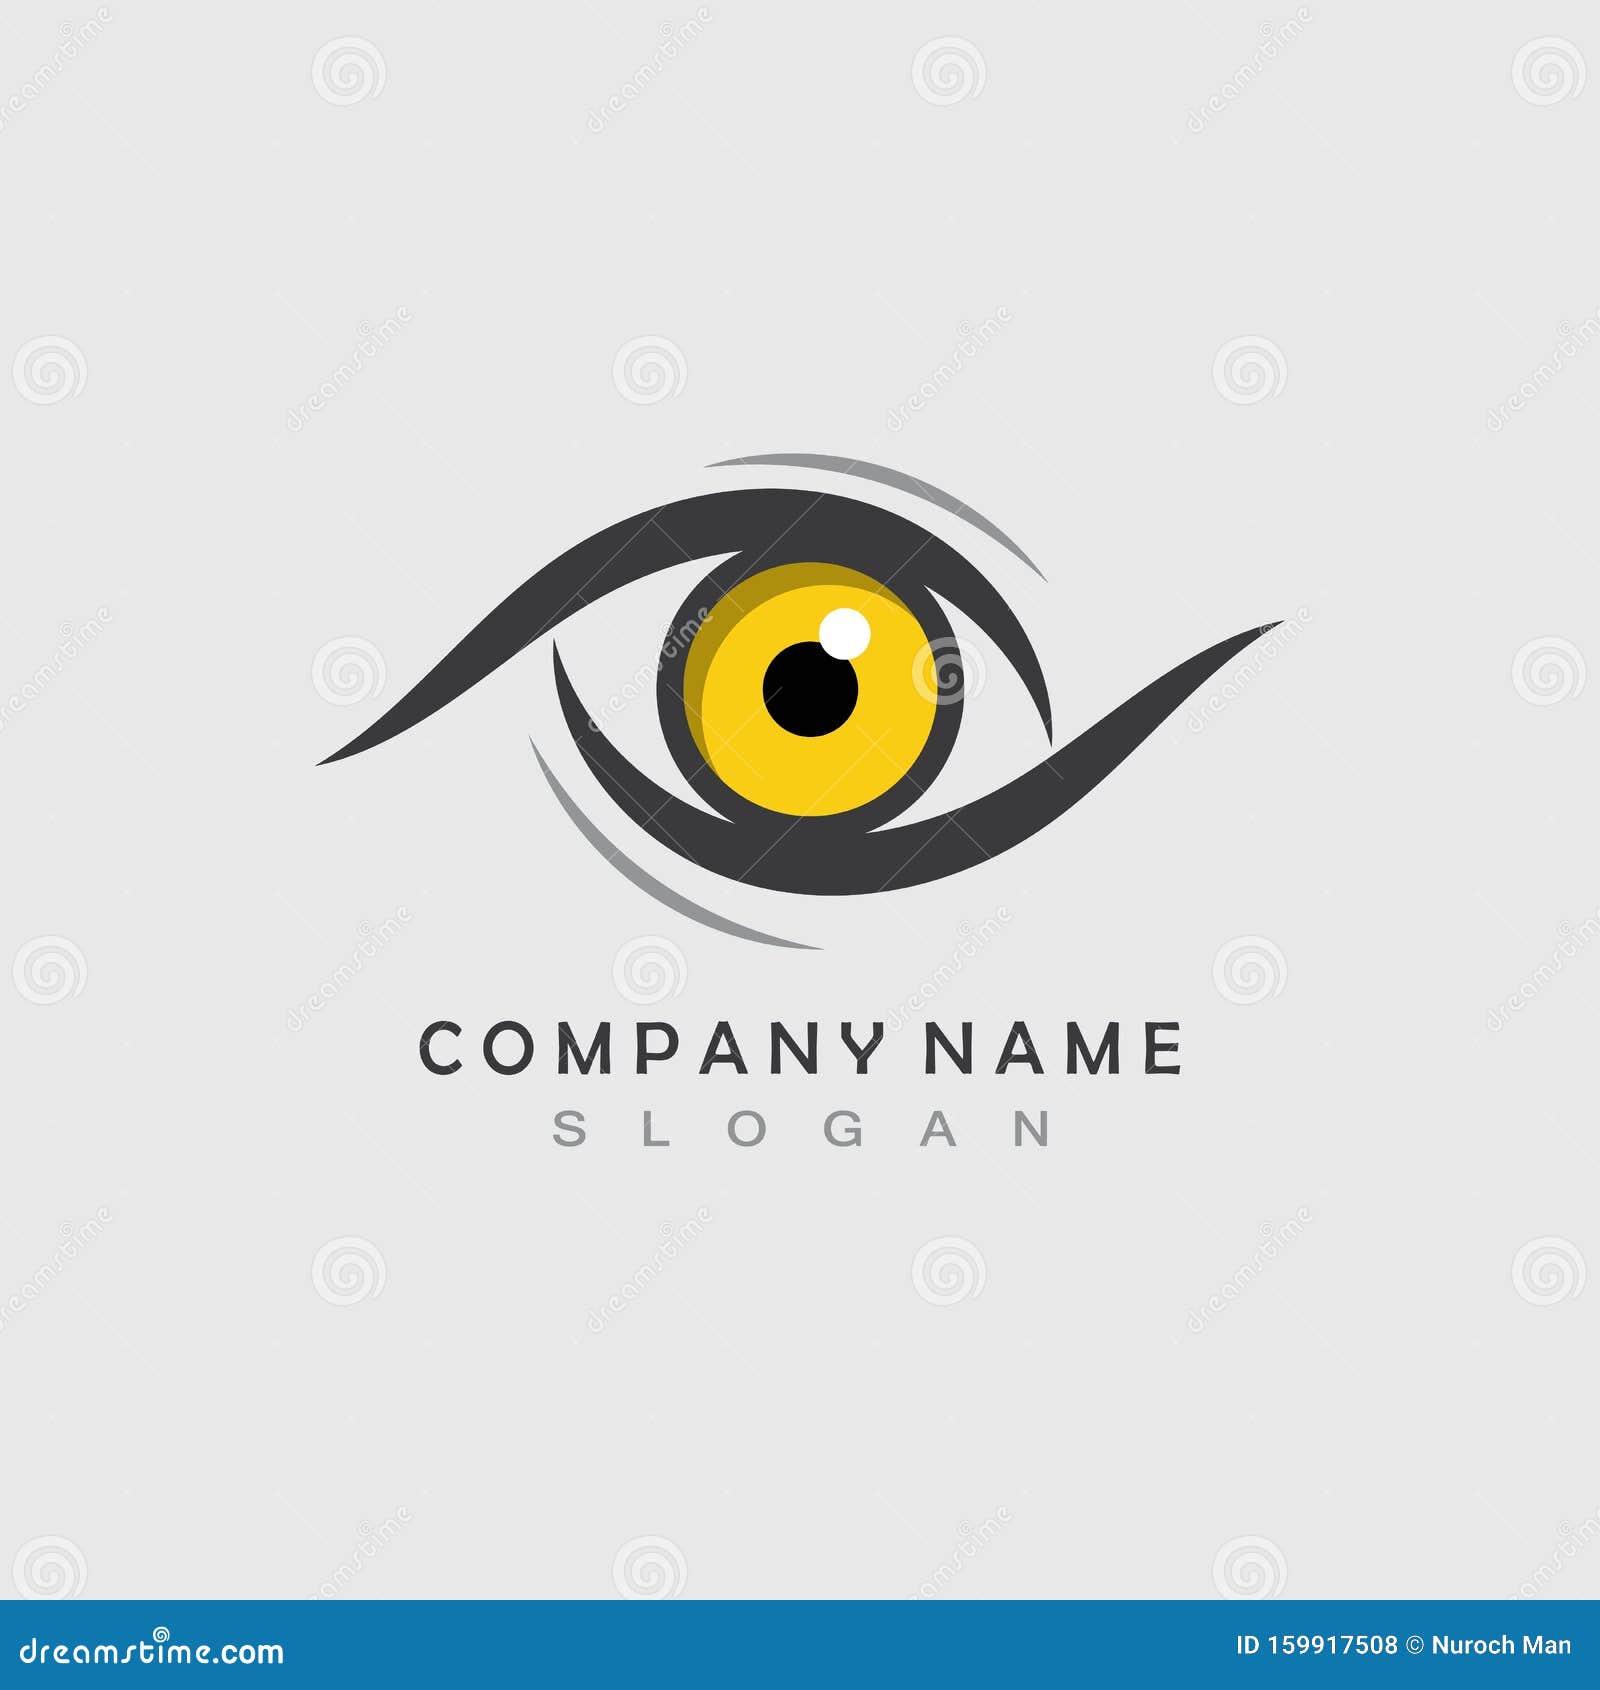 Eagle Eye Logo Concept Design Template Stock Vector Illustration Of Falcon Shield